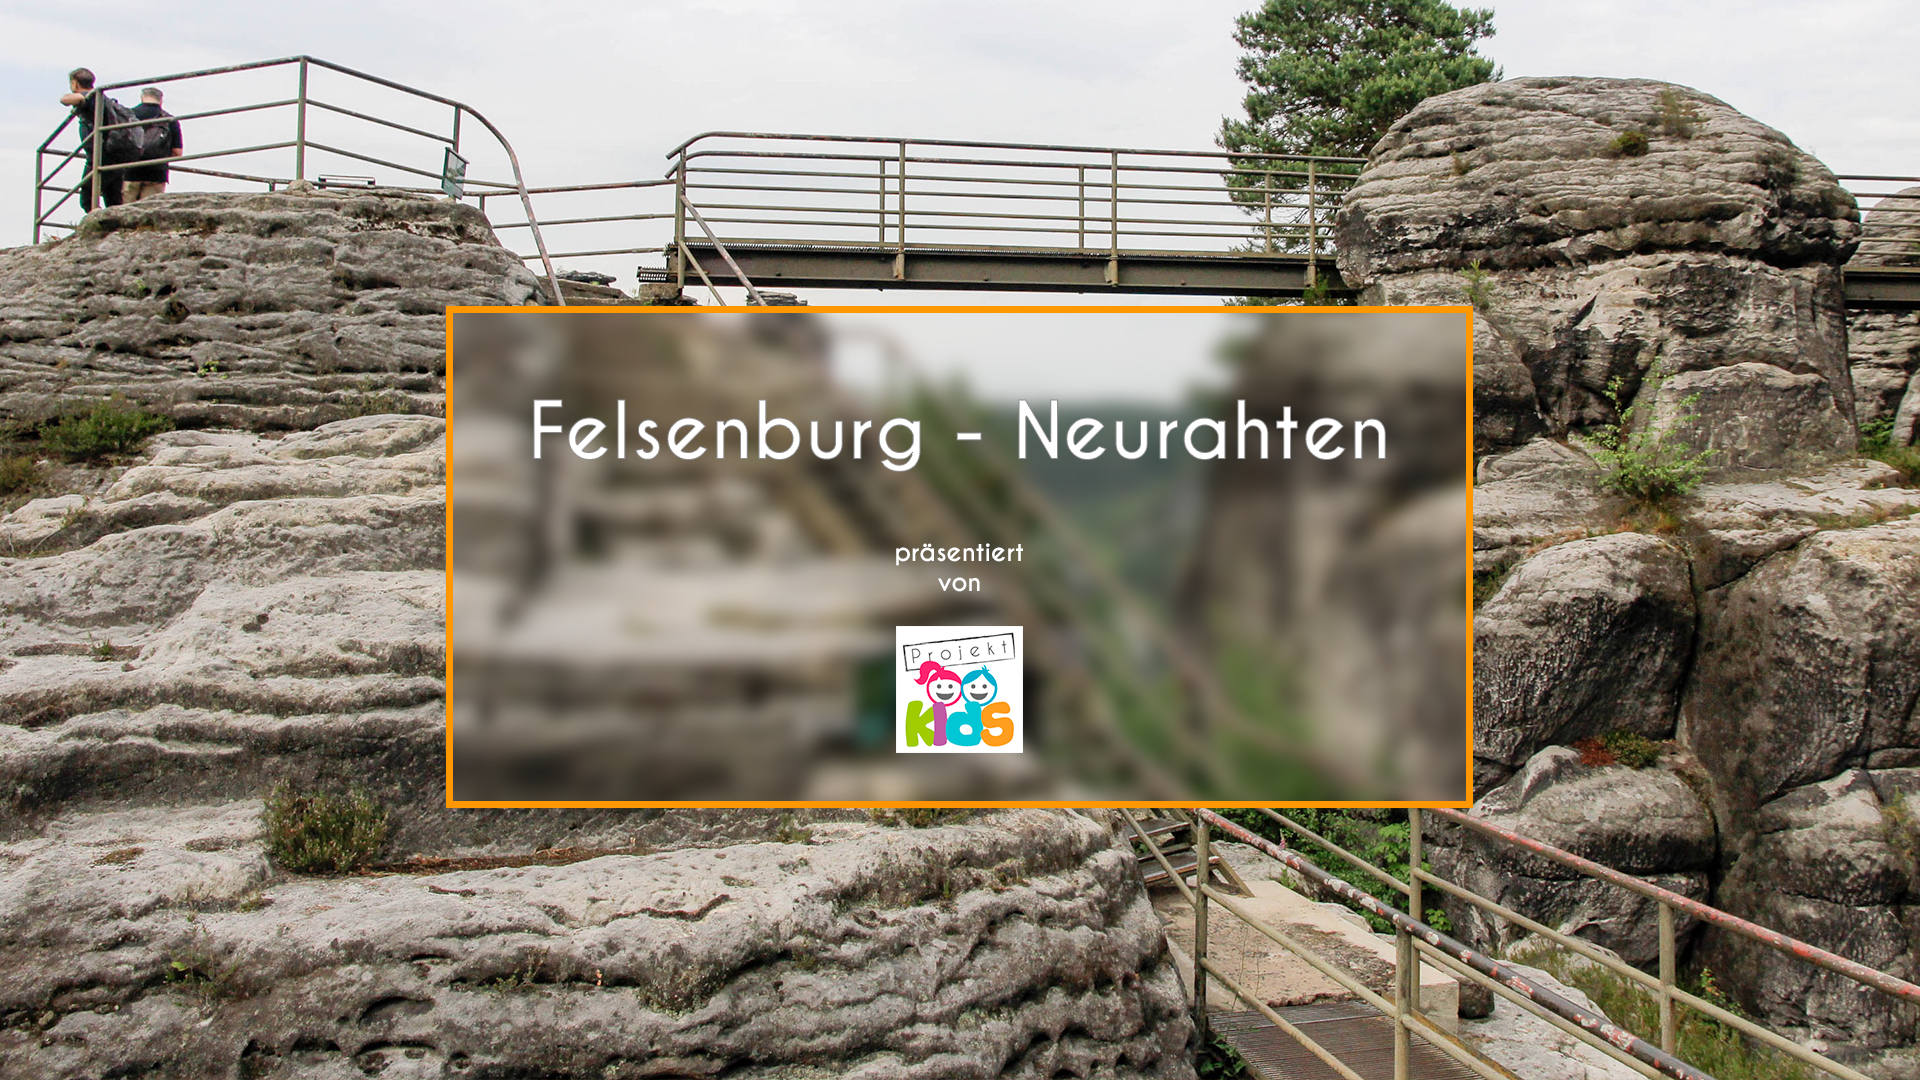 Video - Felsenburg Neurathen - Bastei Sächsische Schweiz